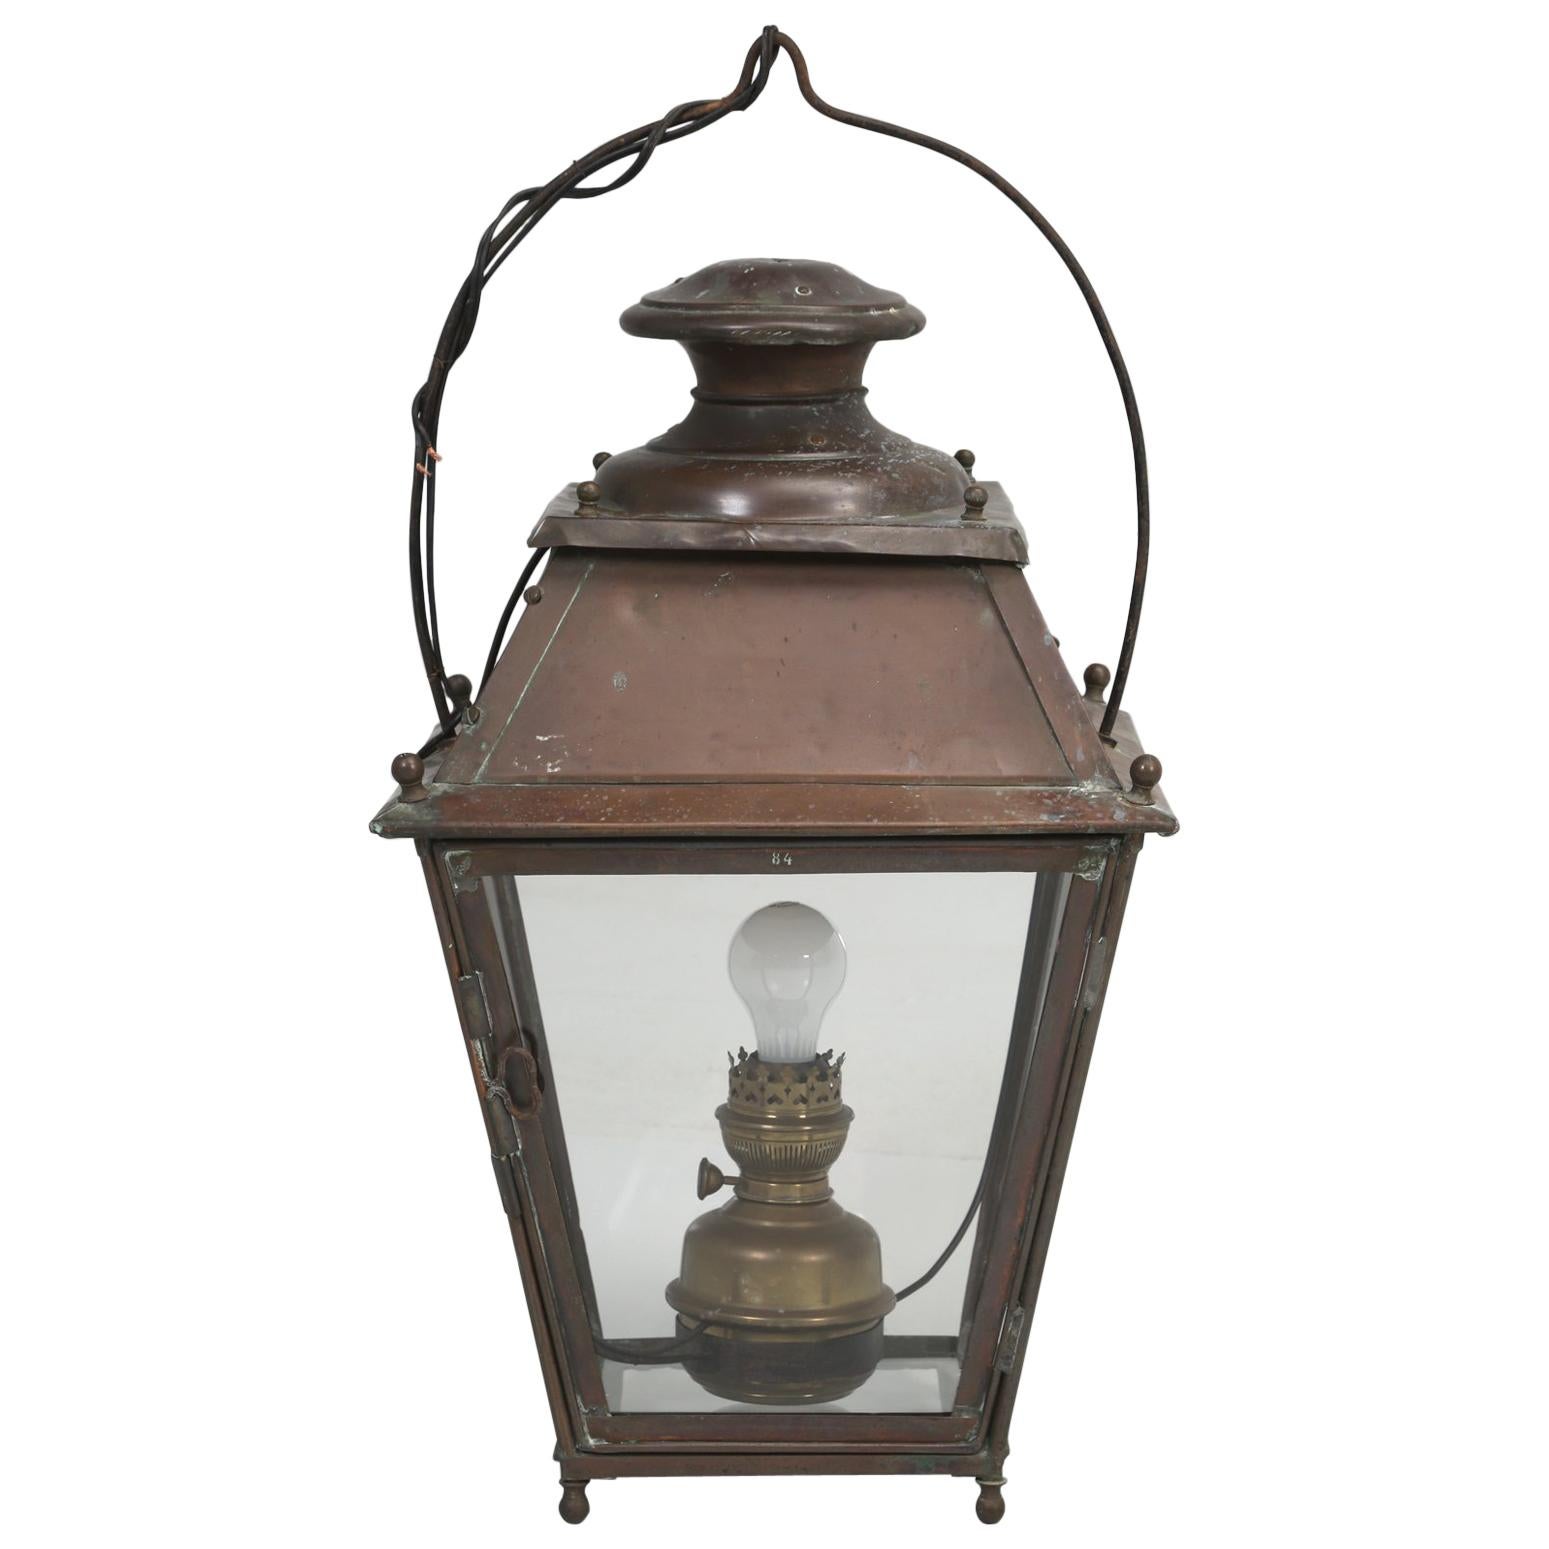 Ancienne lanterne suspendue française en cuivre transformée de l'huile en électrique